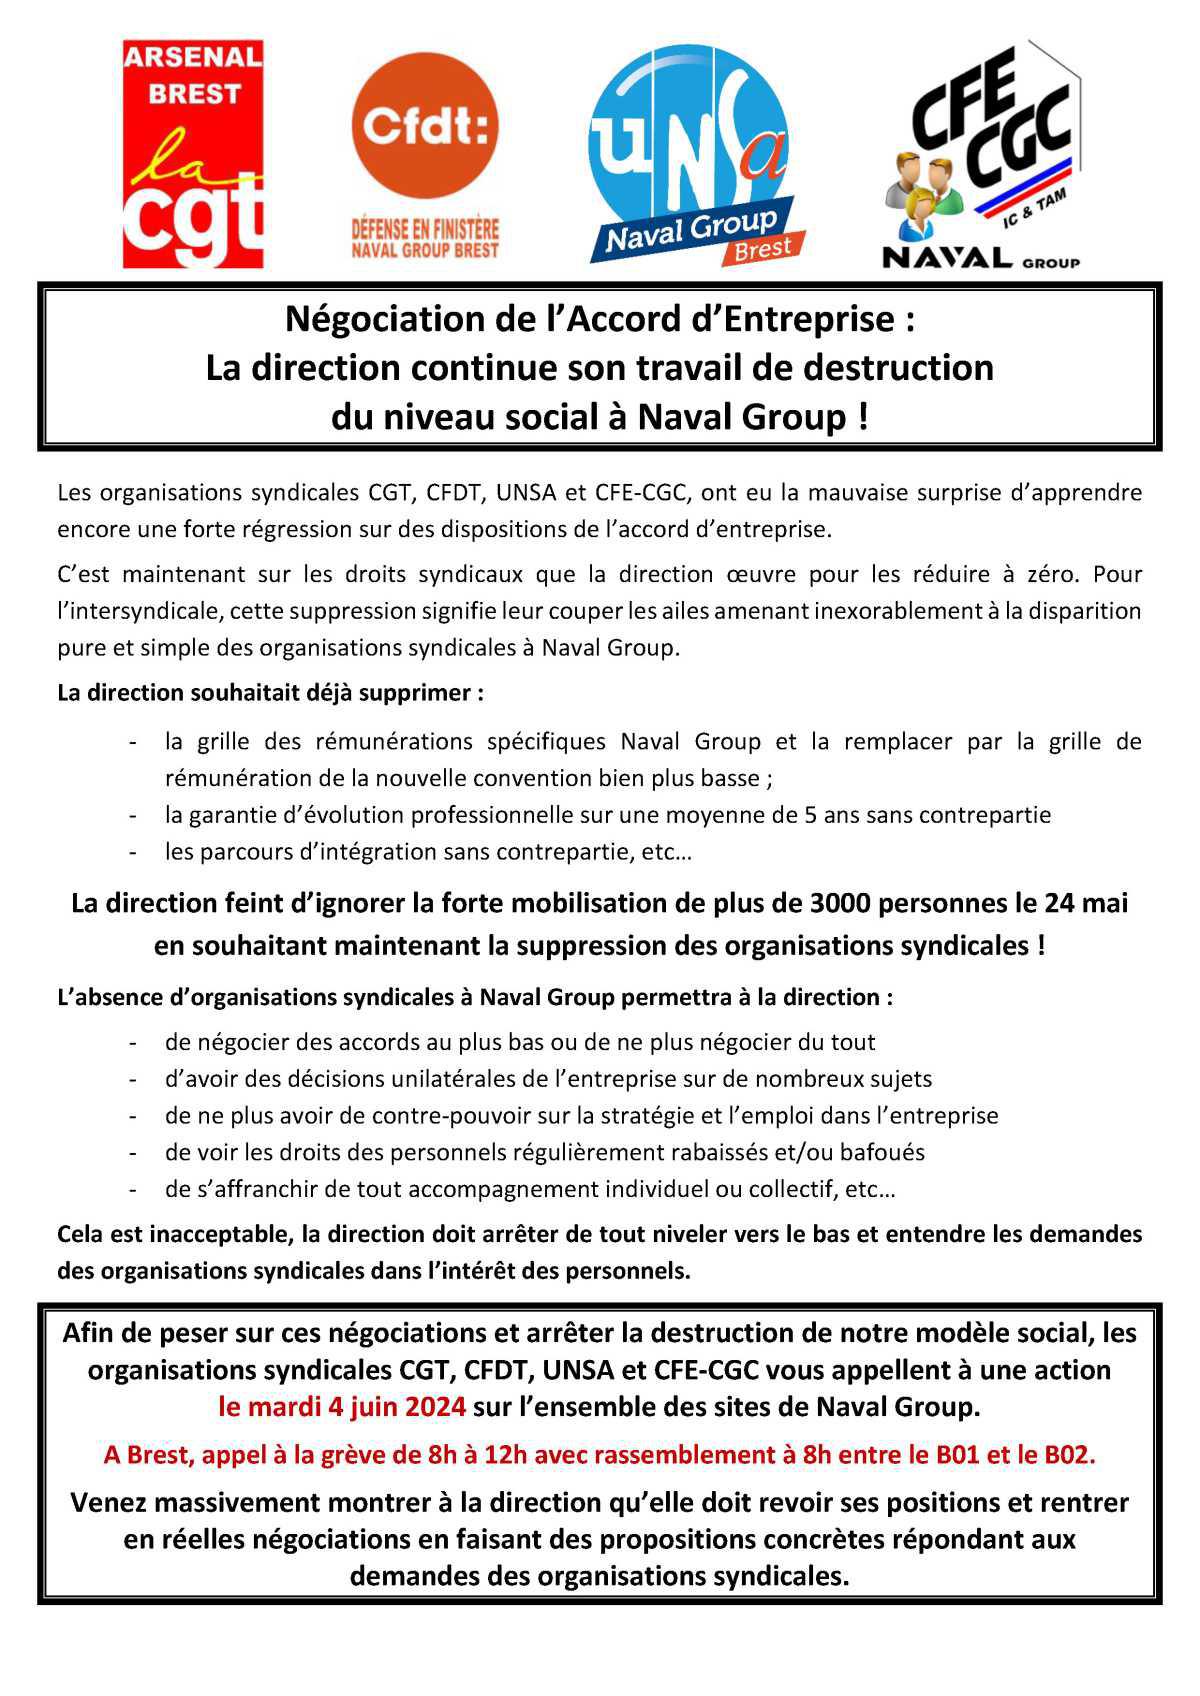 Négociation de l'AE : Brest, Appel Intersyndical - Mardi 4 juin, tous concernés, tous mobilisés !